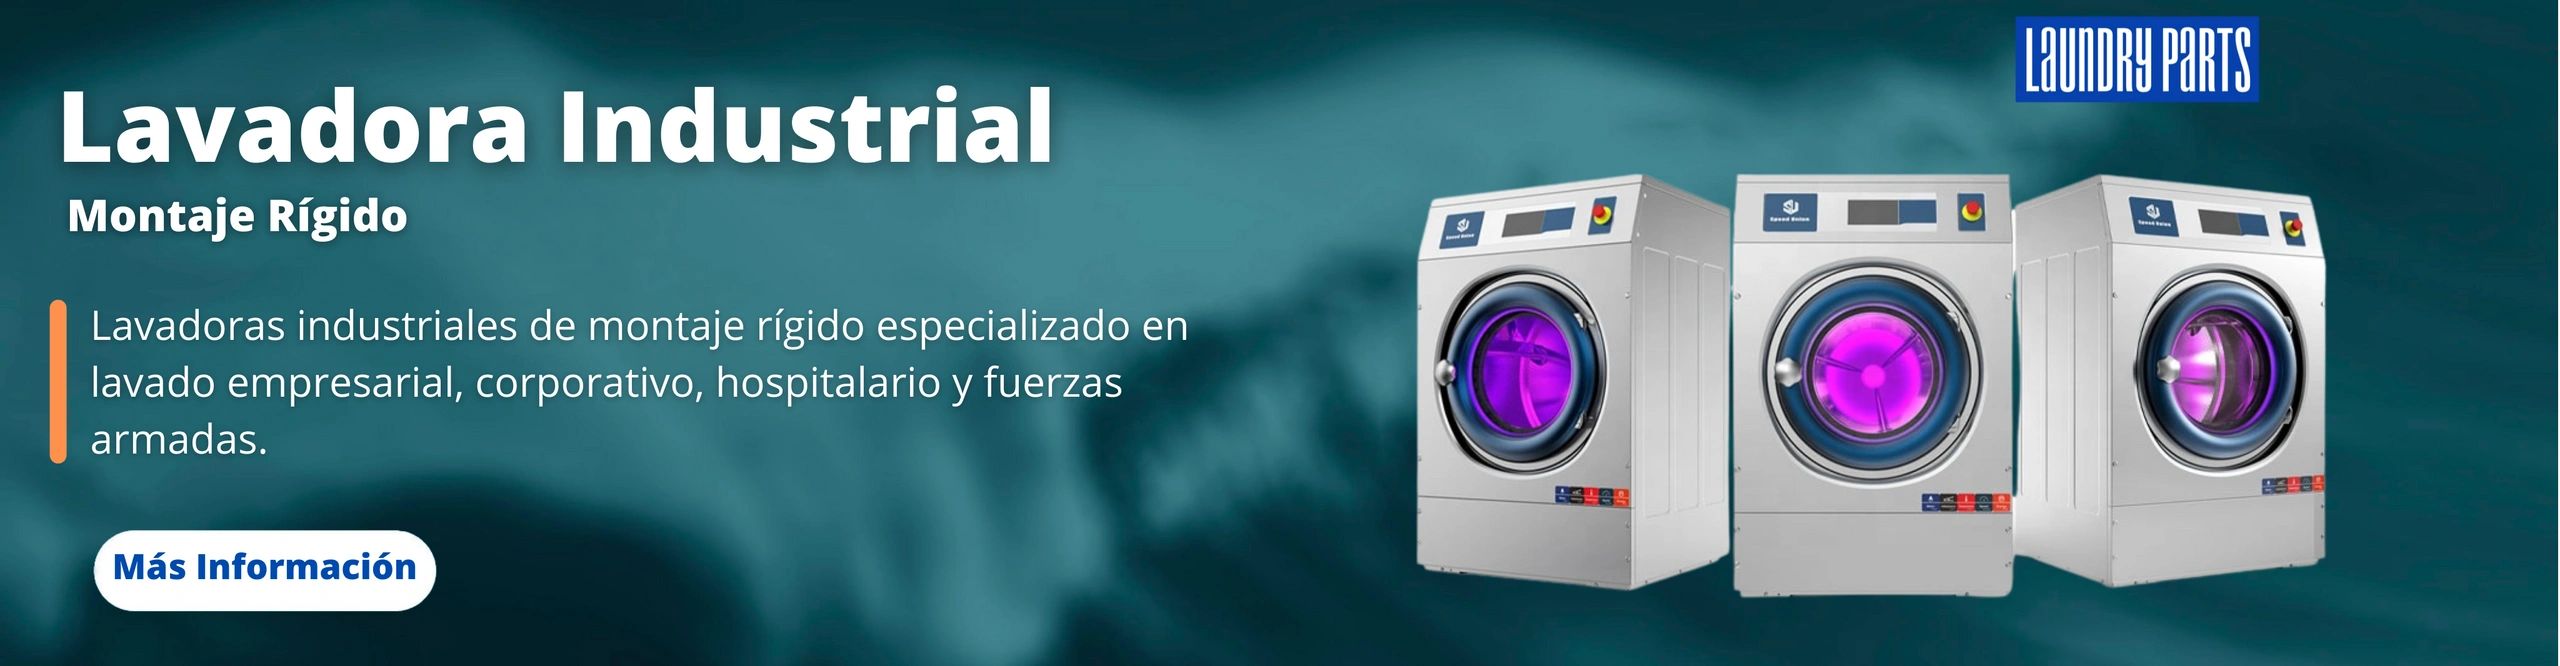 Lavadora industrial, lavadora industrial speed queen, lavadora industrial ipso, venta de lavadoras.